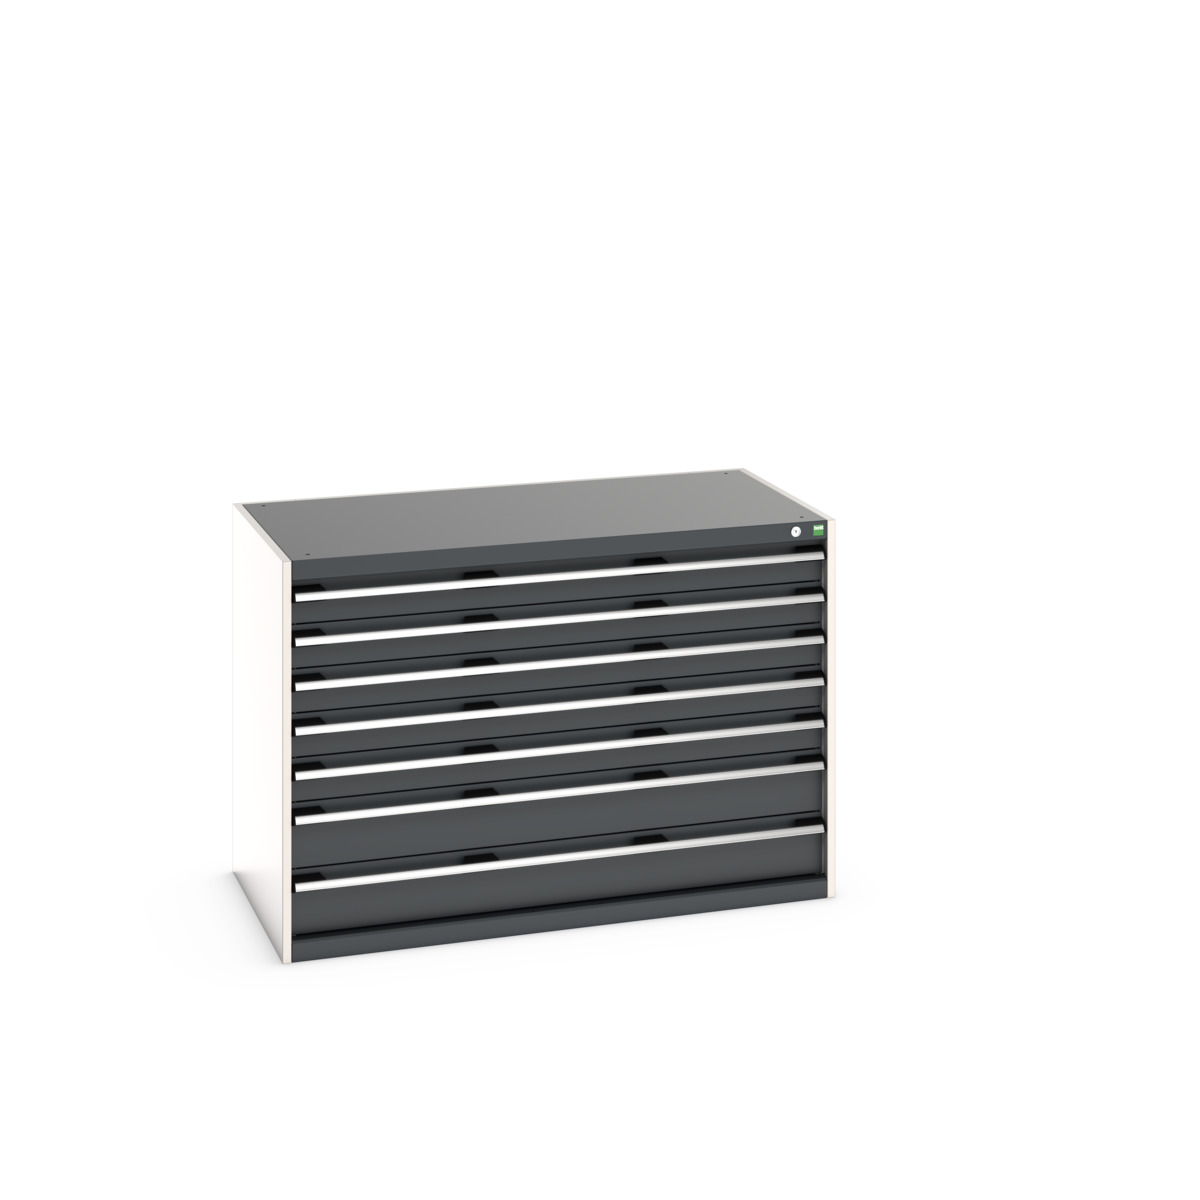 40030087.19V - cubio drawer cabinet